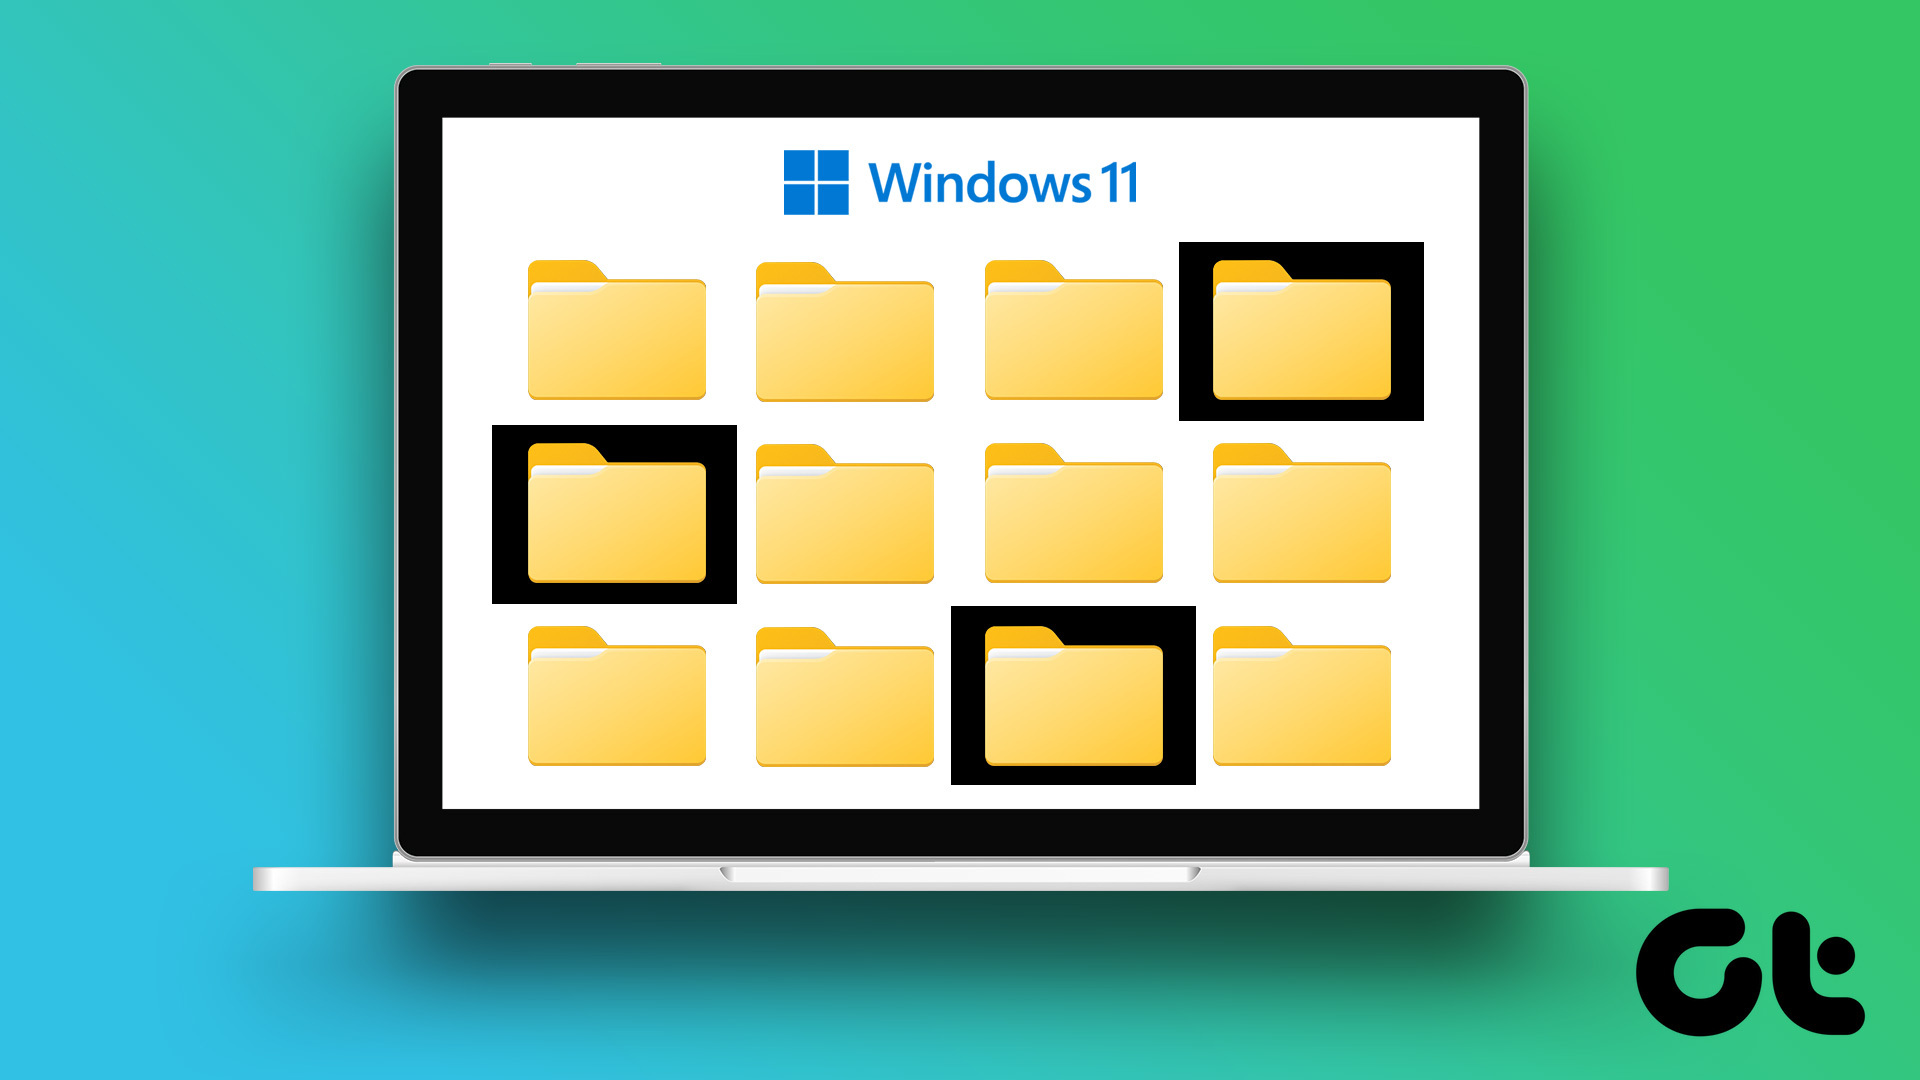 Bạn đang tìm kiếm một bộ sưu tập hình nền đen cho Windows 7 của mình? Đây chính là bộ sưu tập dành cho bạn! Với những hình nền đen sáng tạo và độc đáo, bạn sẽ không còn cảm thấy nhàm chán với màn hình máy tính của mình nữa.